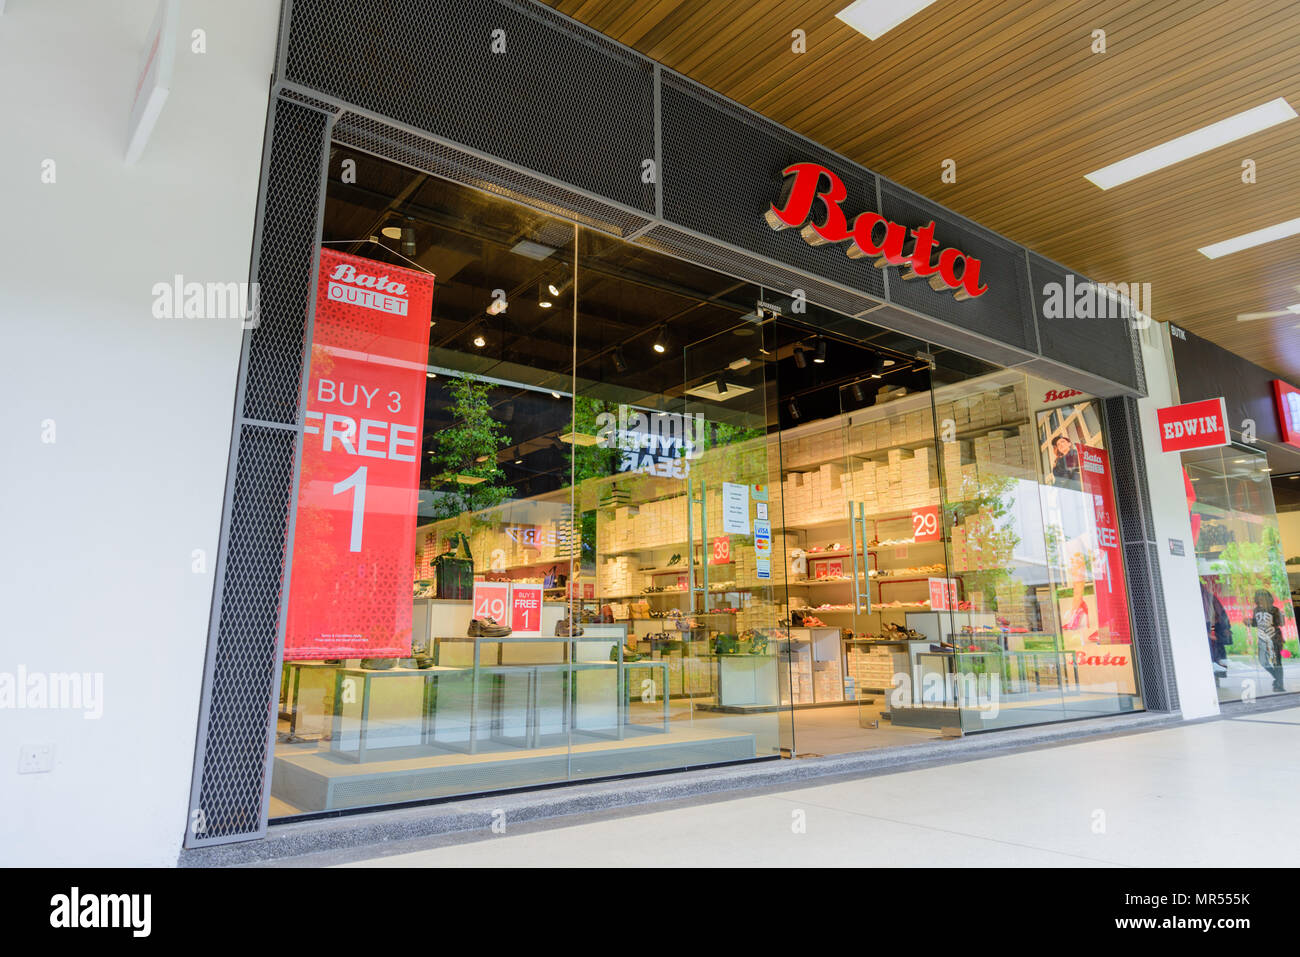 Penang, Malesia - Nov 11, 2017 : Bata Shoes Shop. Bata è di proprietà di una famiglia globale di calzature e accessori di moda produttore e rivenditore con agenti Foto Stock